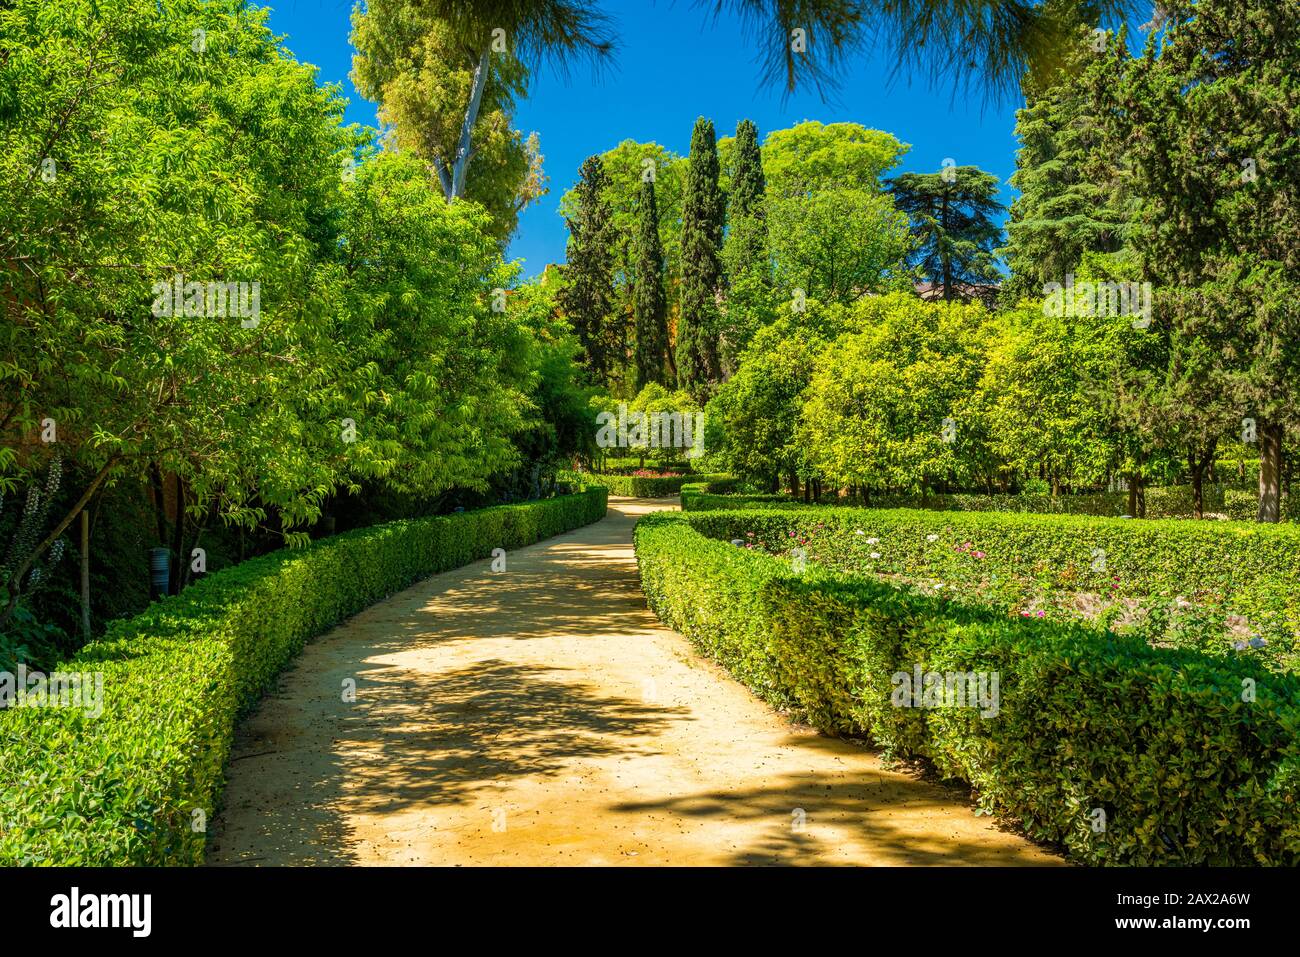 El idílico jardín de los reales Alcázares de Sevilla, Andalucía. Foto de stock